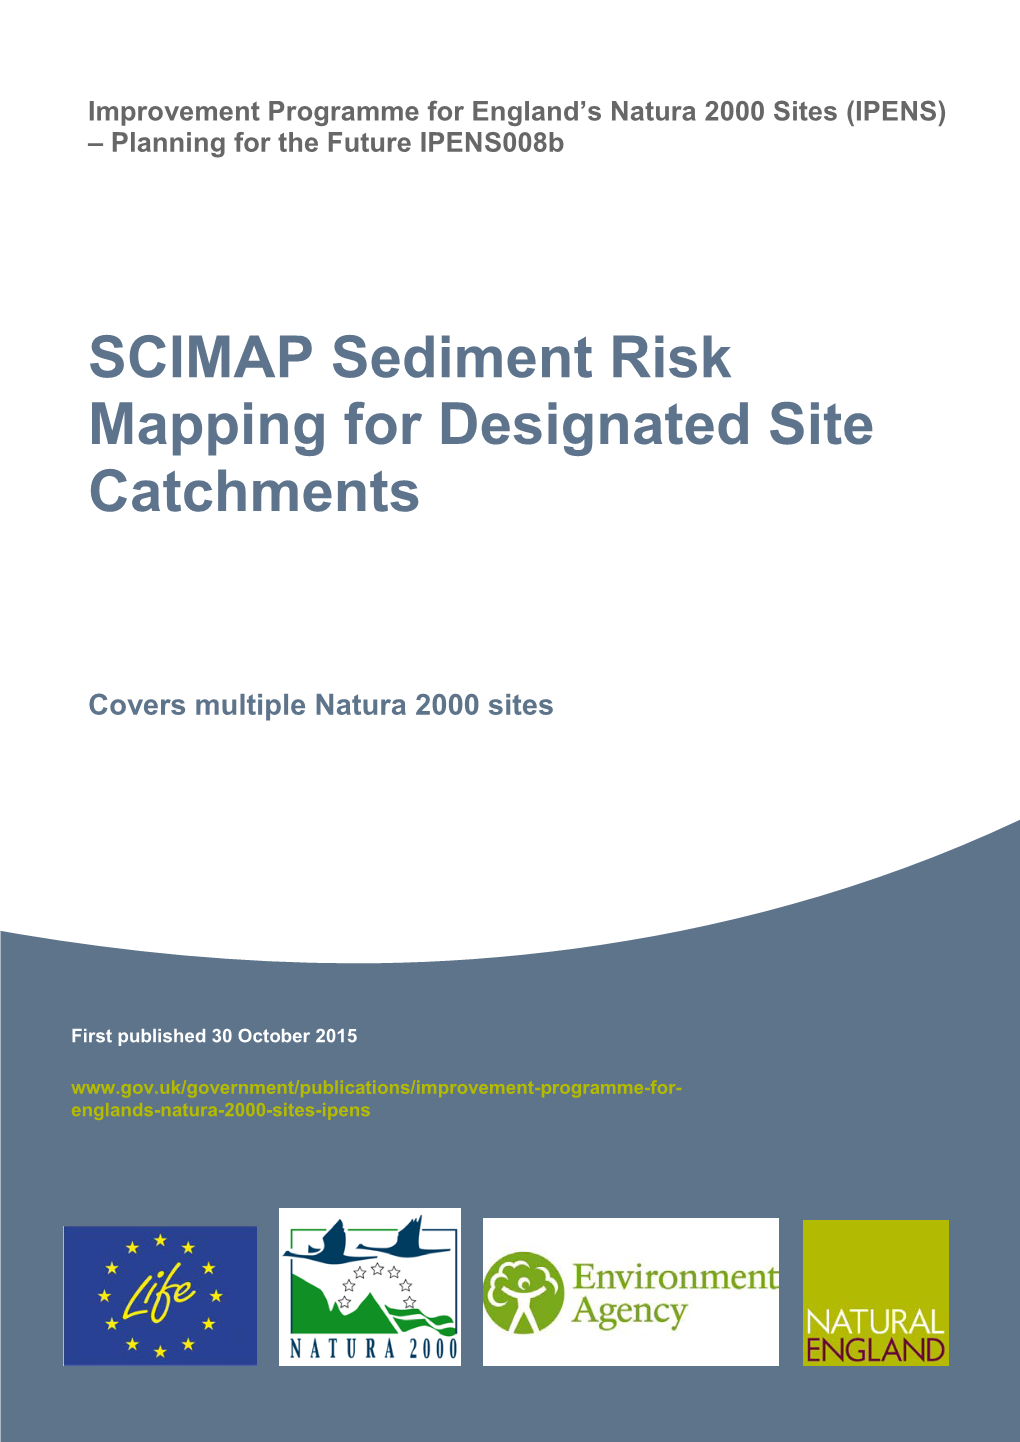 SCIMAP Sediment Risk Mapping for Designated Site Catchments